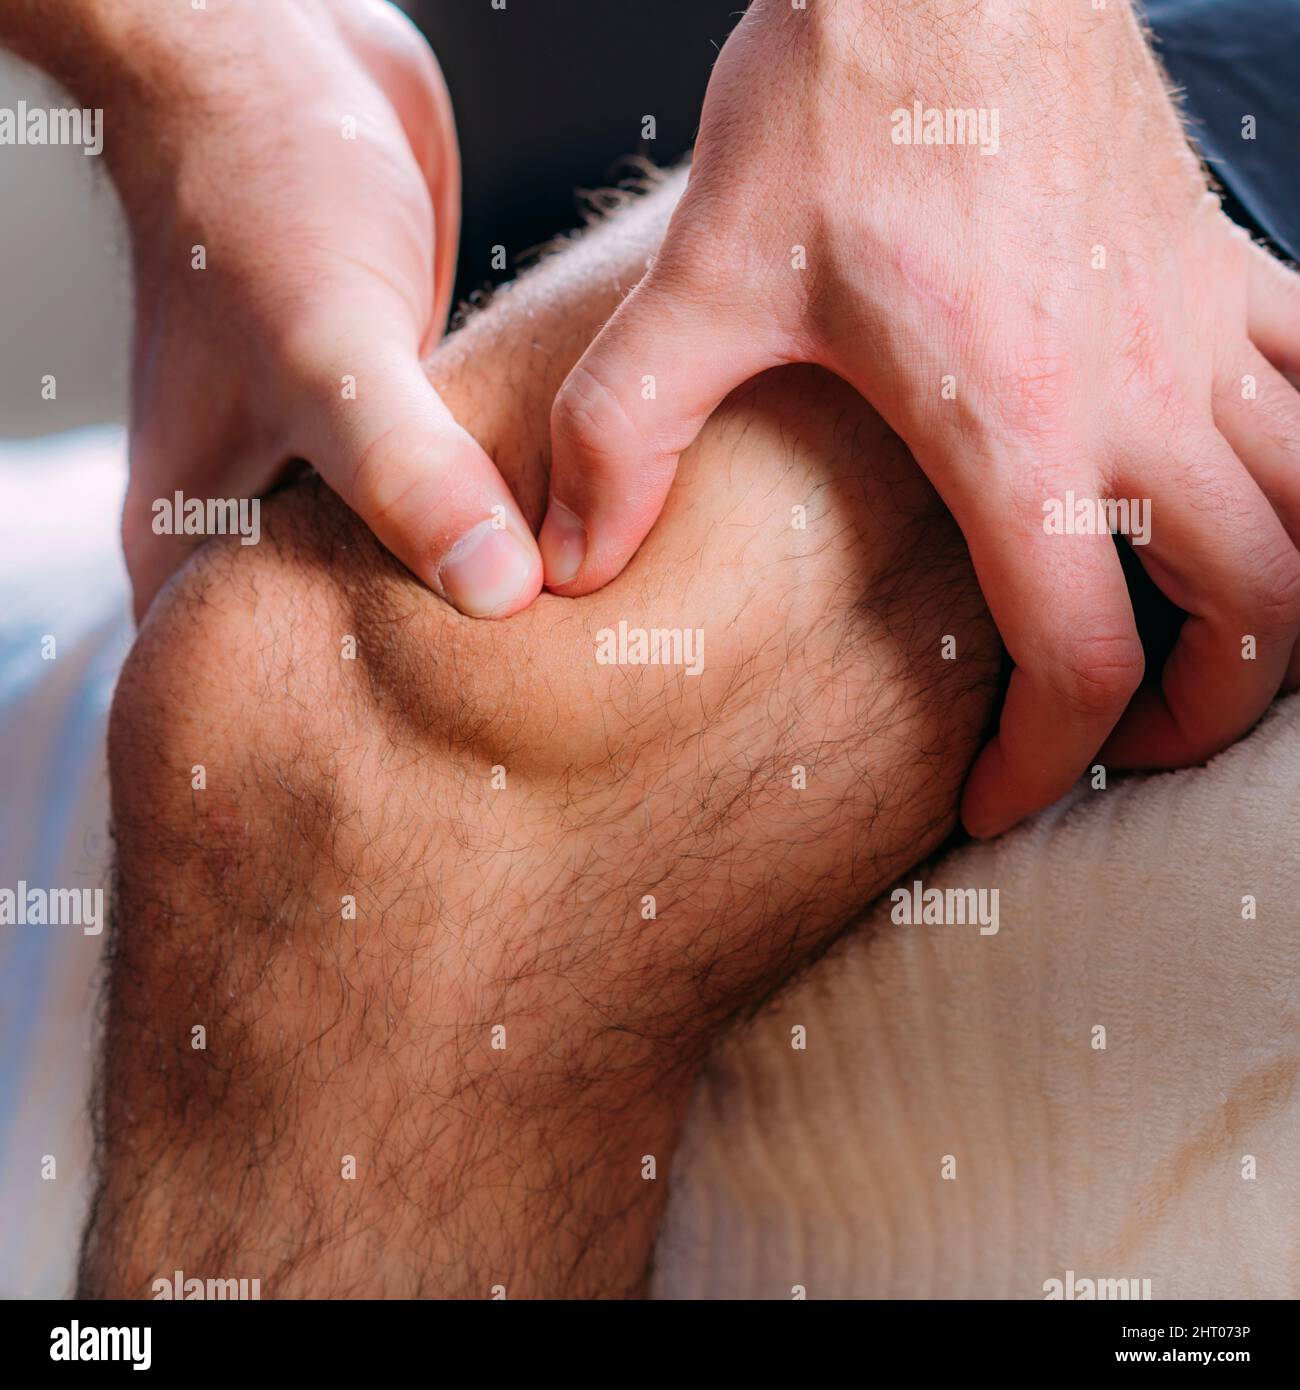 Physiotherapist massaging an injured knee Stock Photo